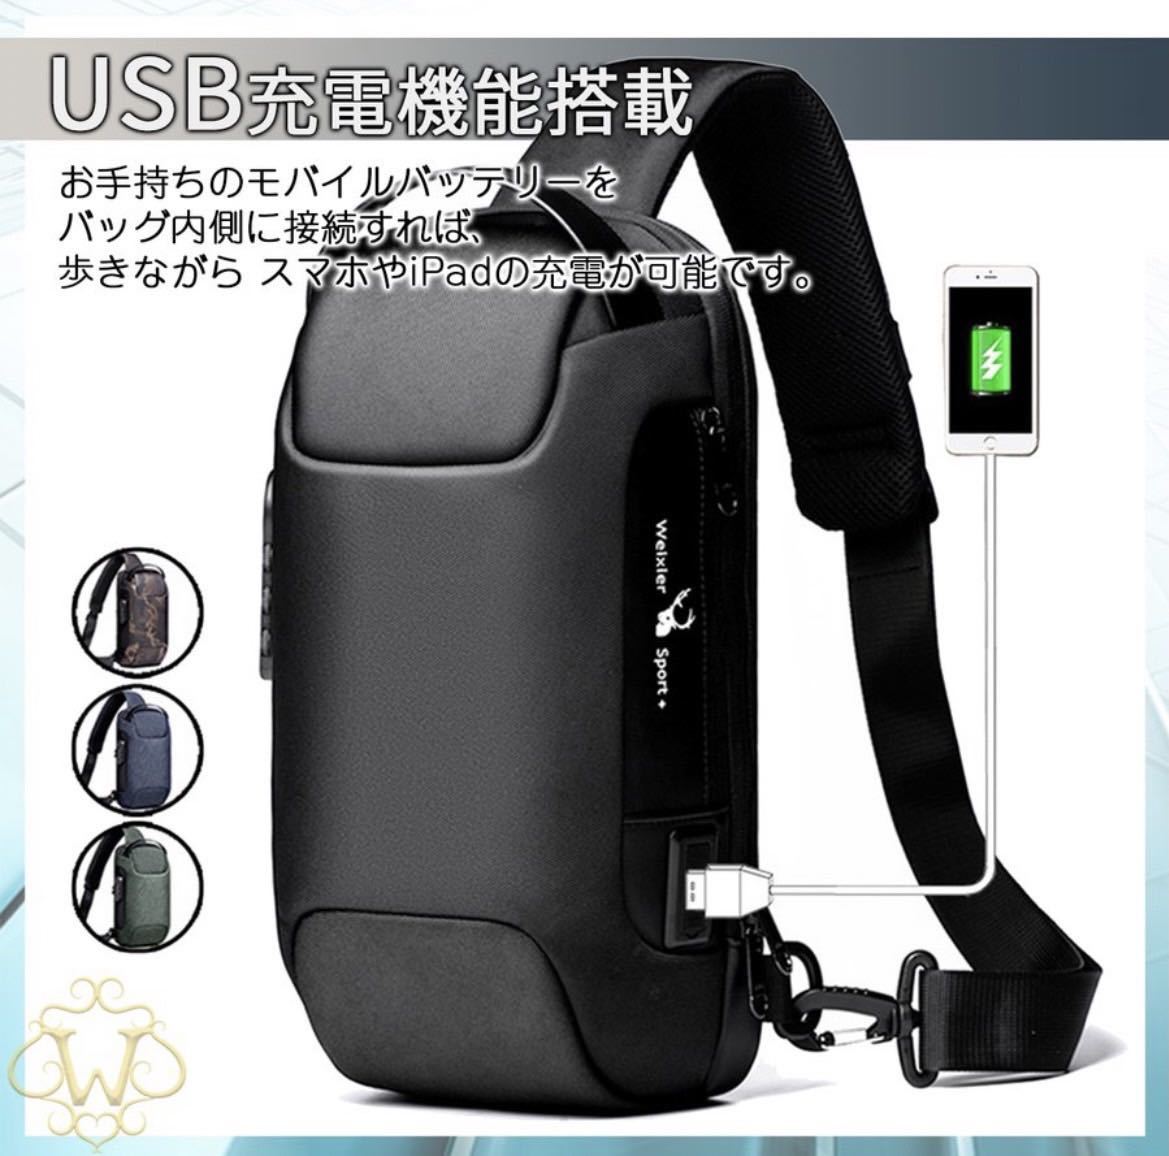 ボディバッグ 大容量 USBポート ショルダーバッグ USB充電 ワンショルダーバッグ 肩掛け 防水 軽量